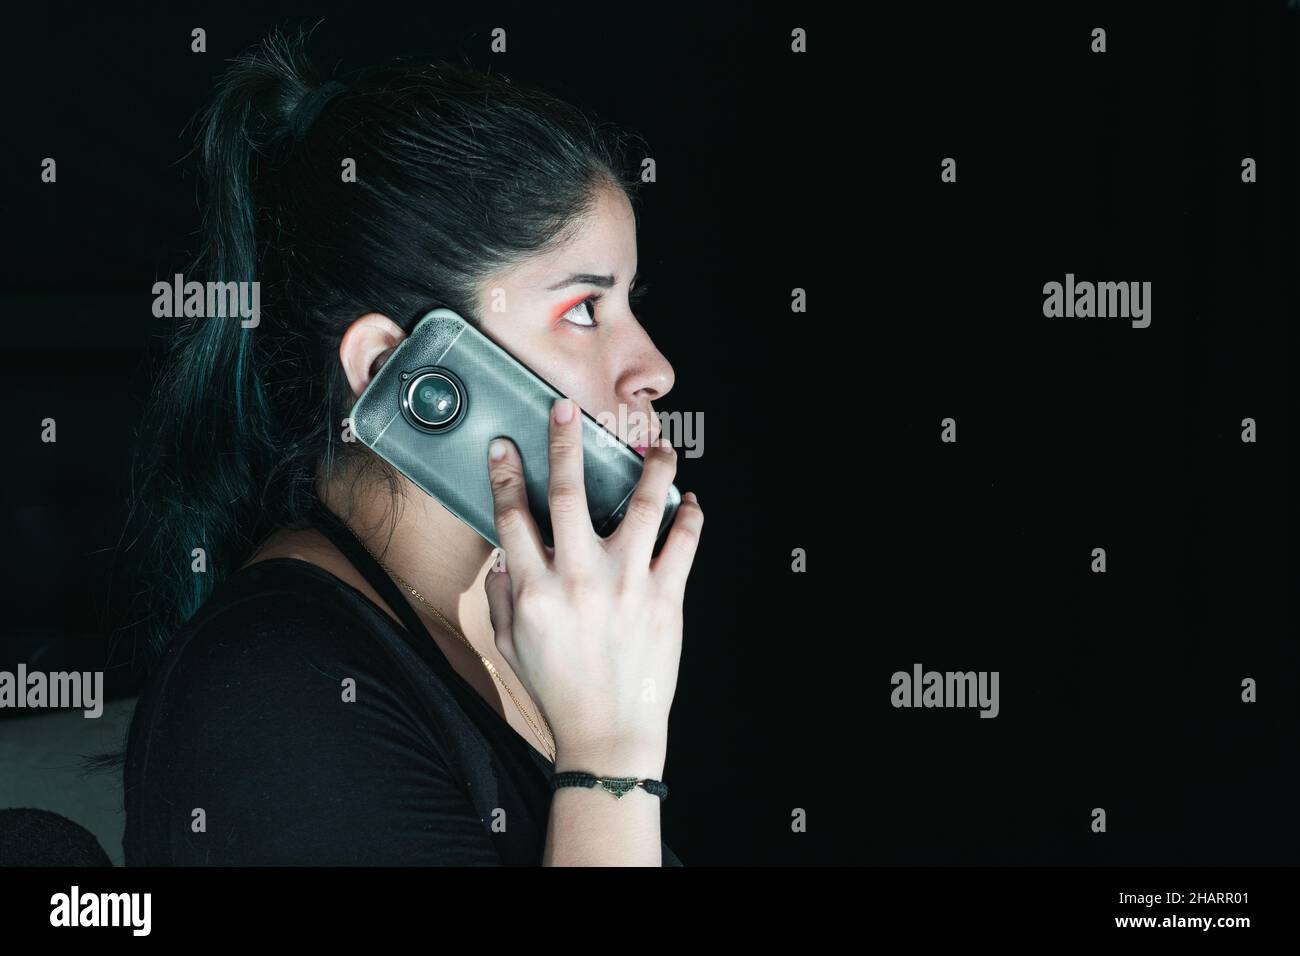 belle femme de latina aux cheveux verts recevant un appel d'extorsion, avec son téléphone cellulaire dans sa main. avec son regard vers le haut et le regard sérieux. avec un bl Banque D'Images